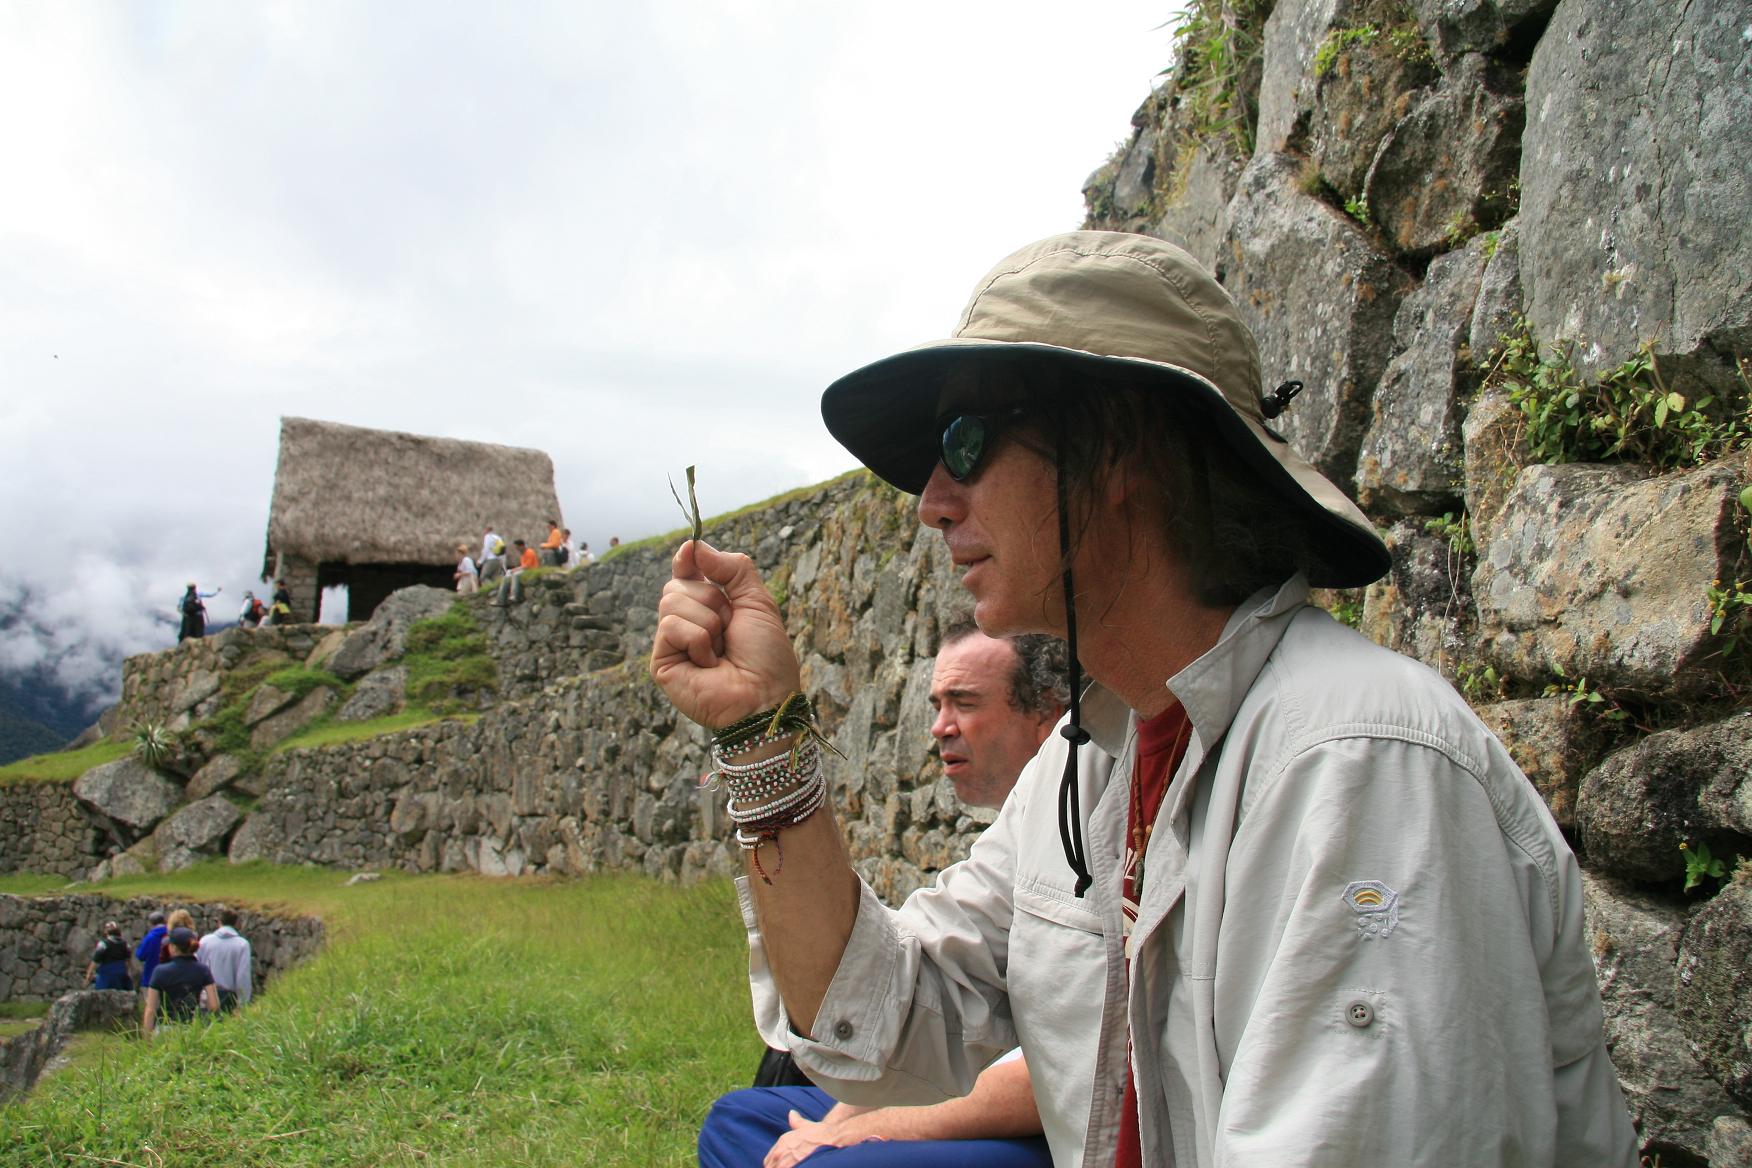 setting intention at Machu Picchu